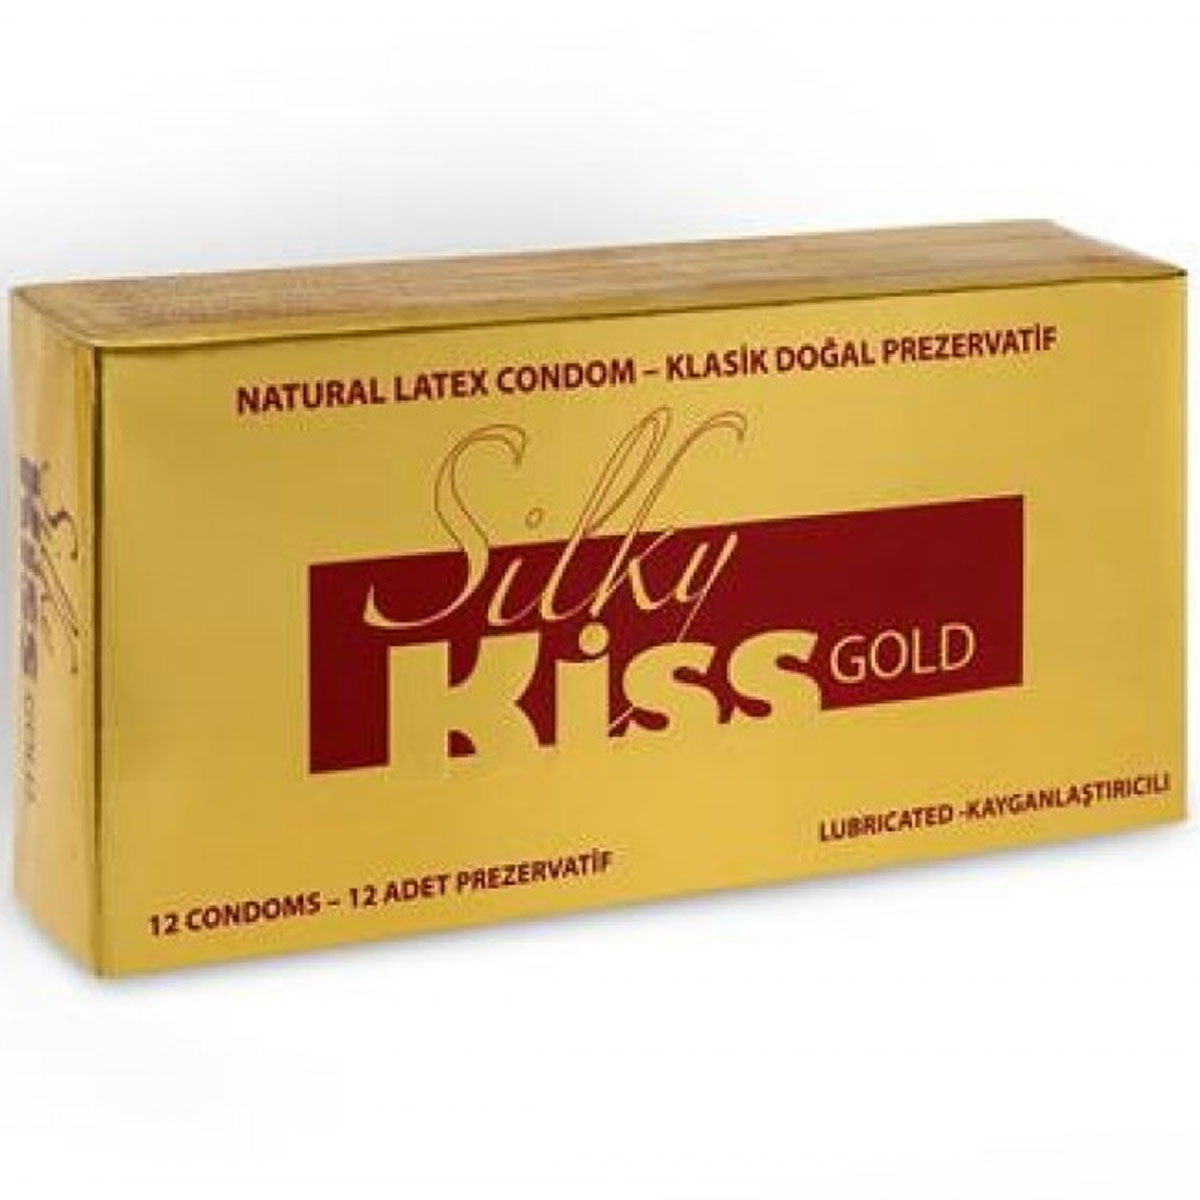 Silky Kiss Gold Kayganlatrcl Prezervatif C-1574